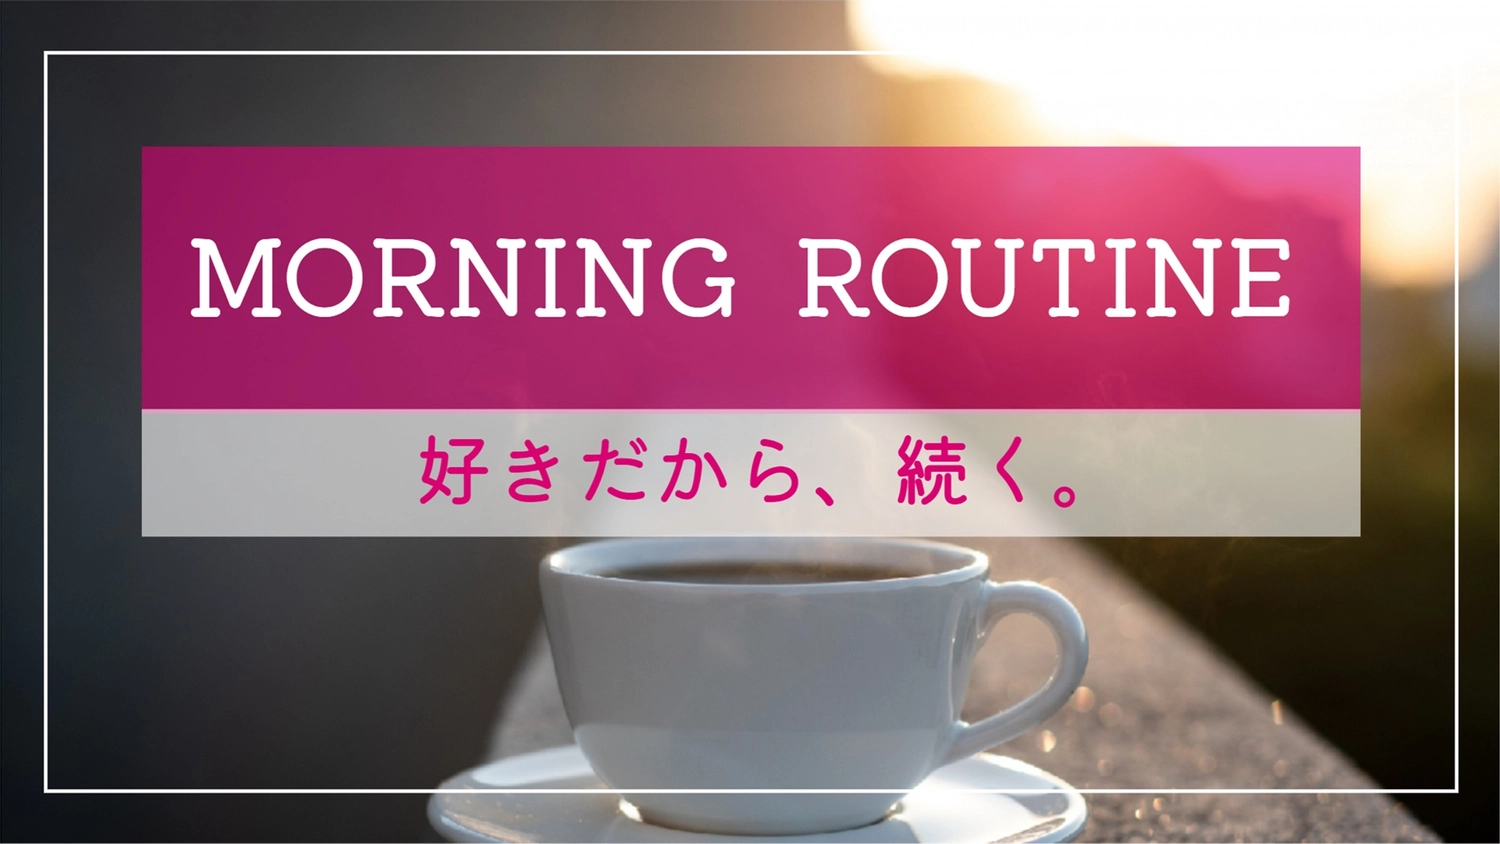 コーヒー写真のモーニングルーティン, morning routine, no people, title, Blog Banner template